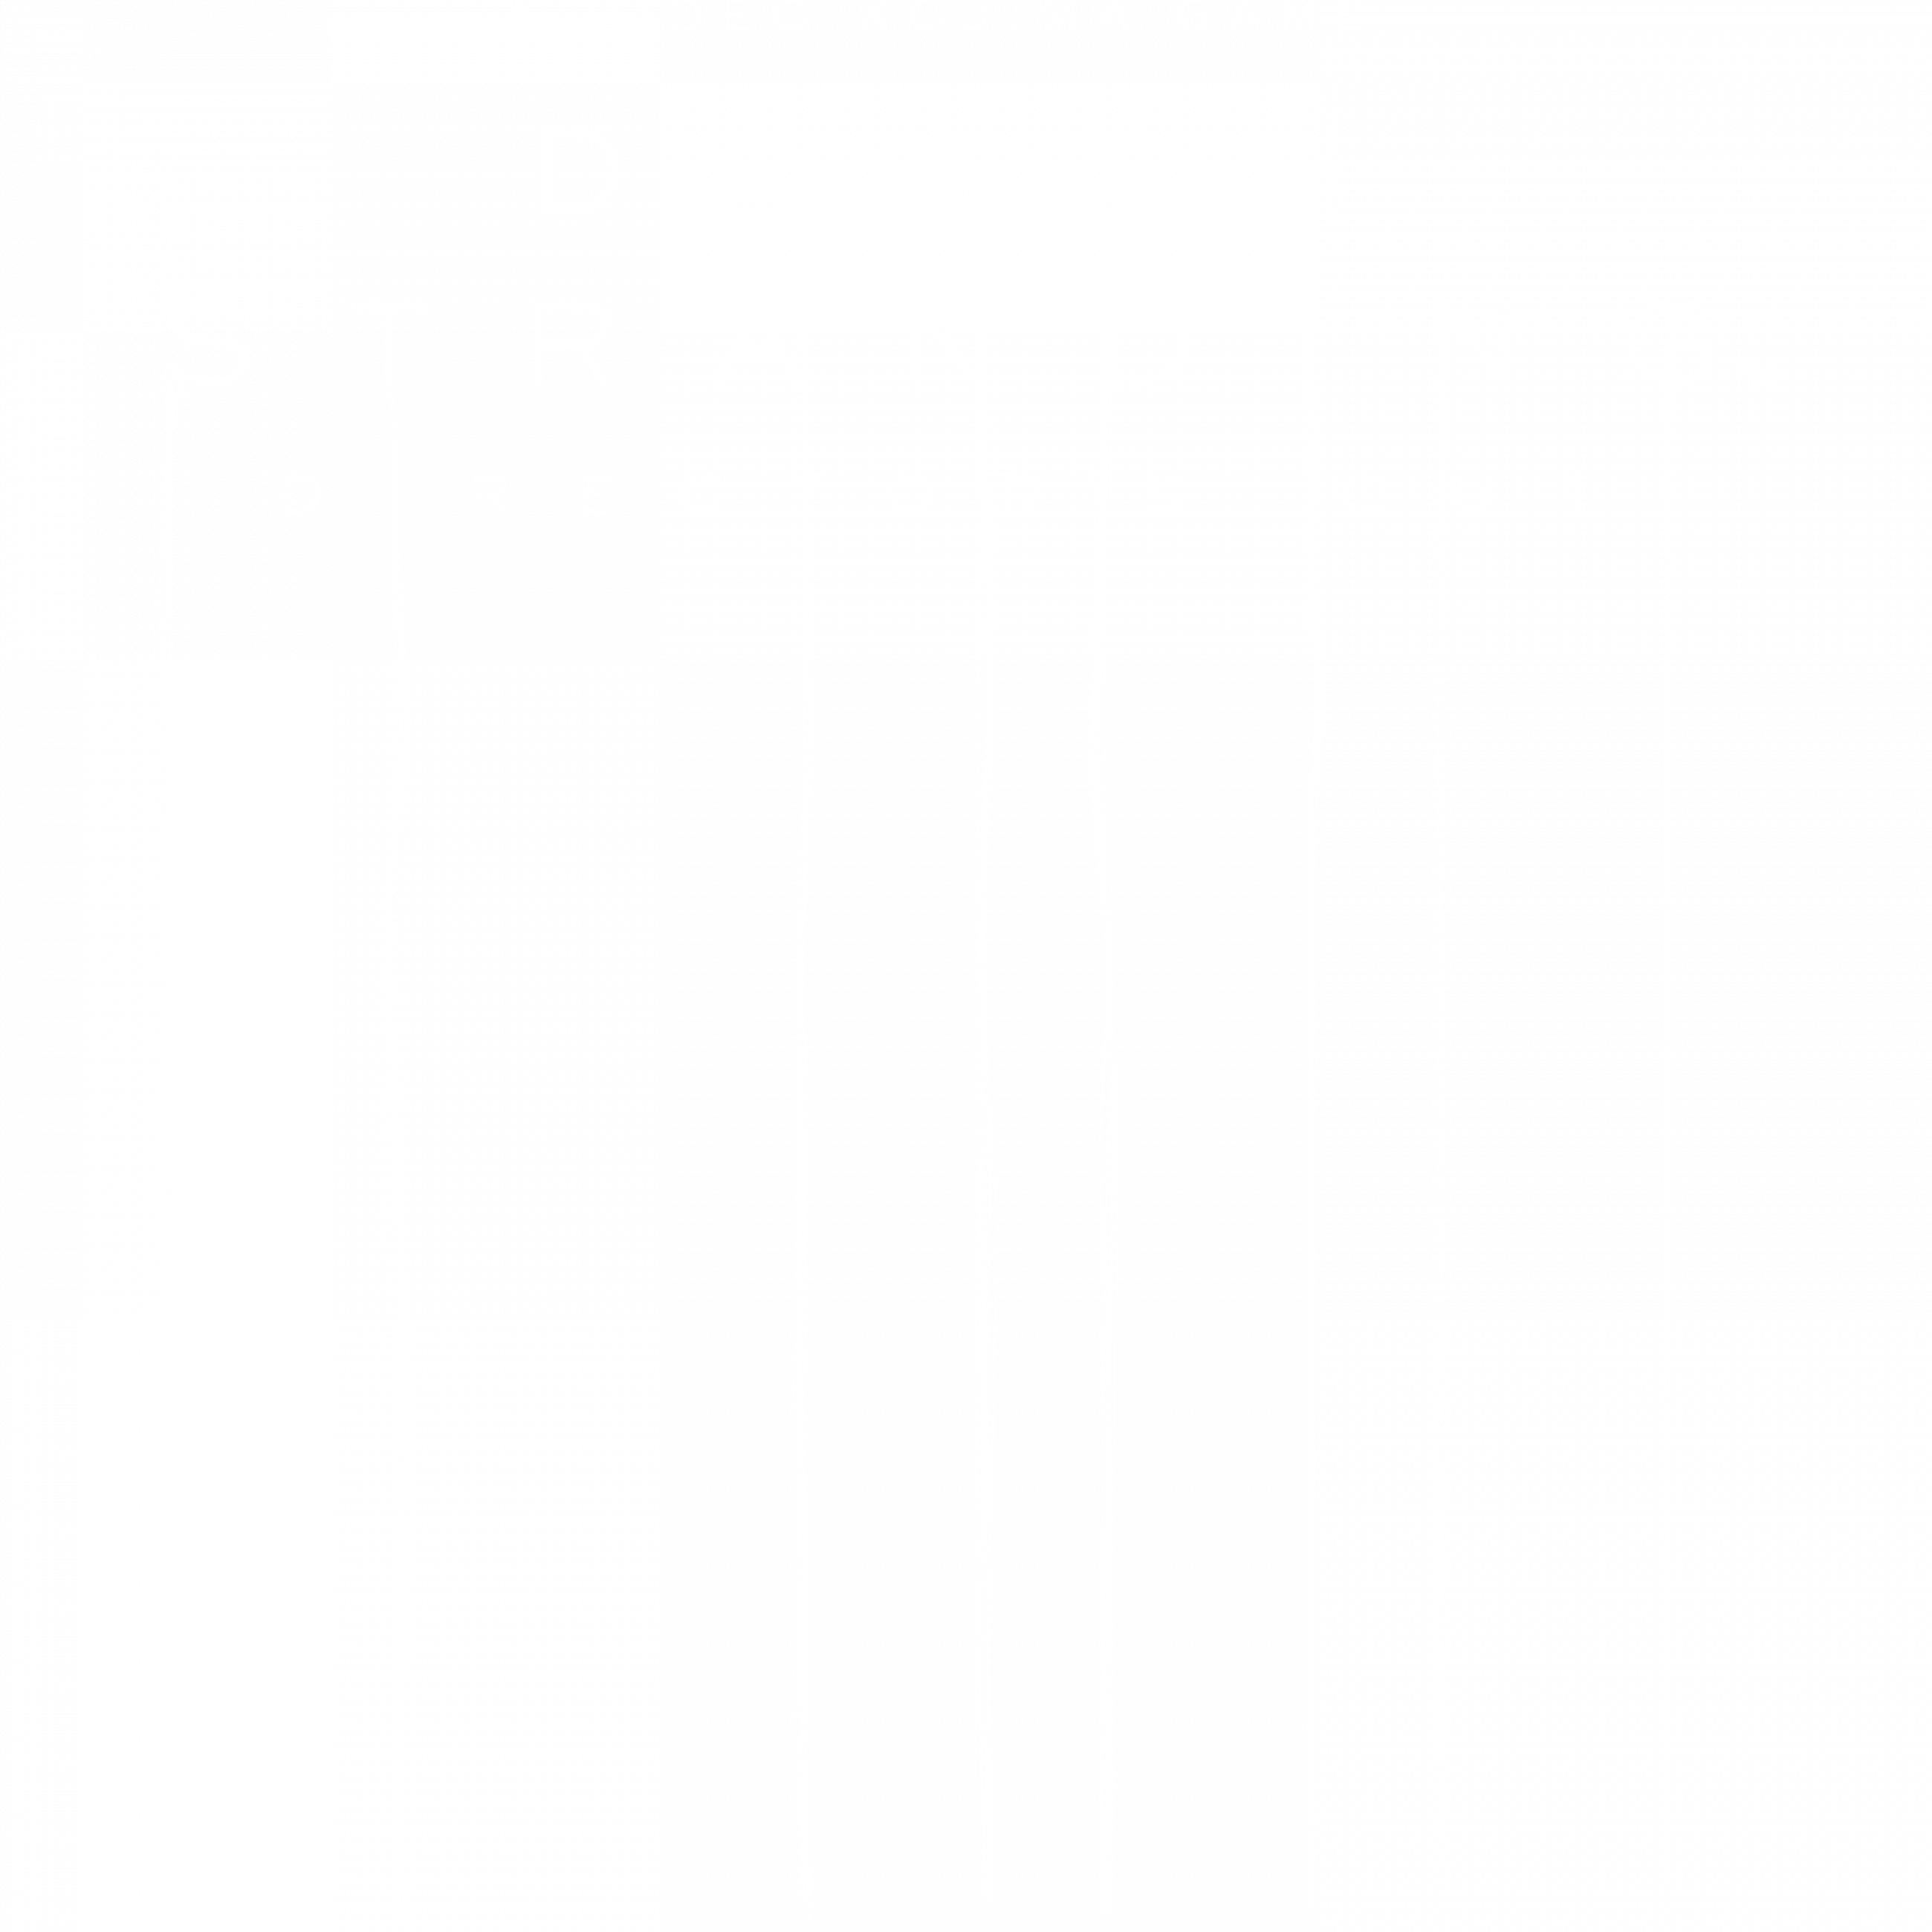 Death Stranding directors cut logo